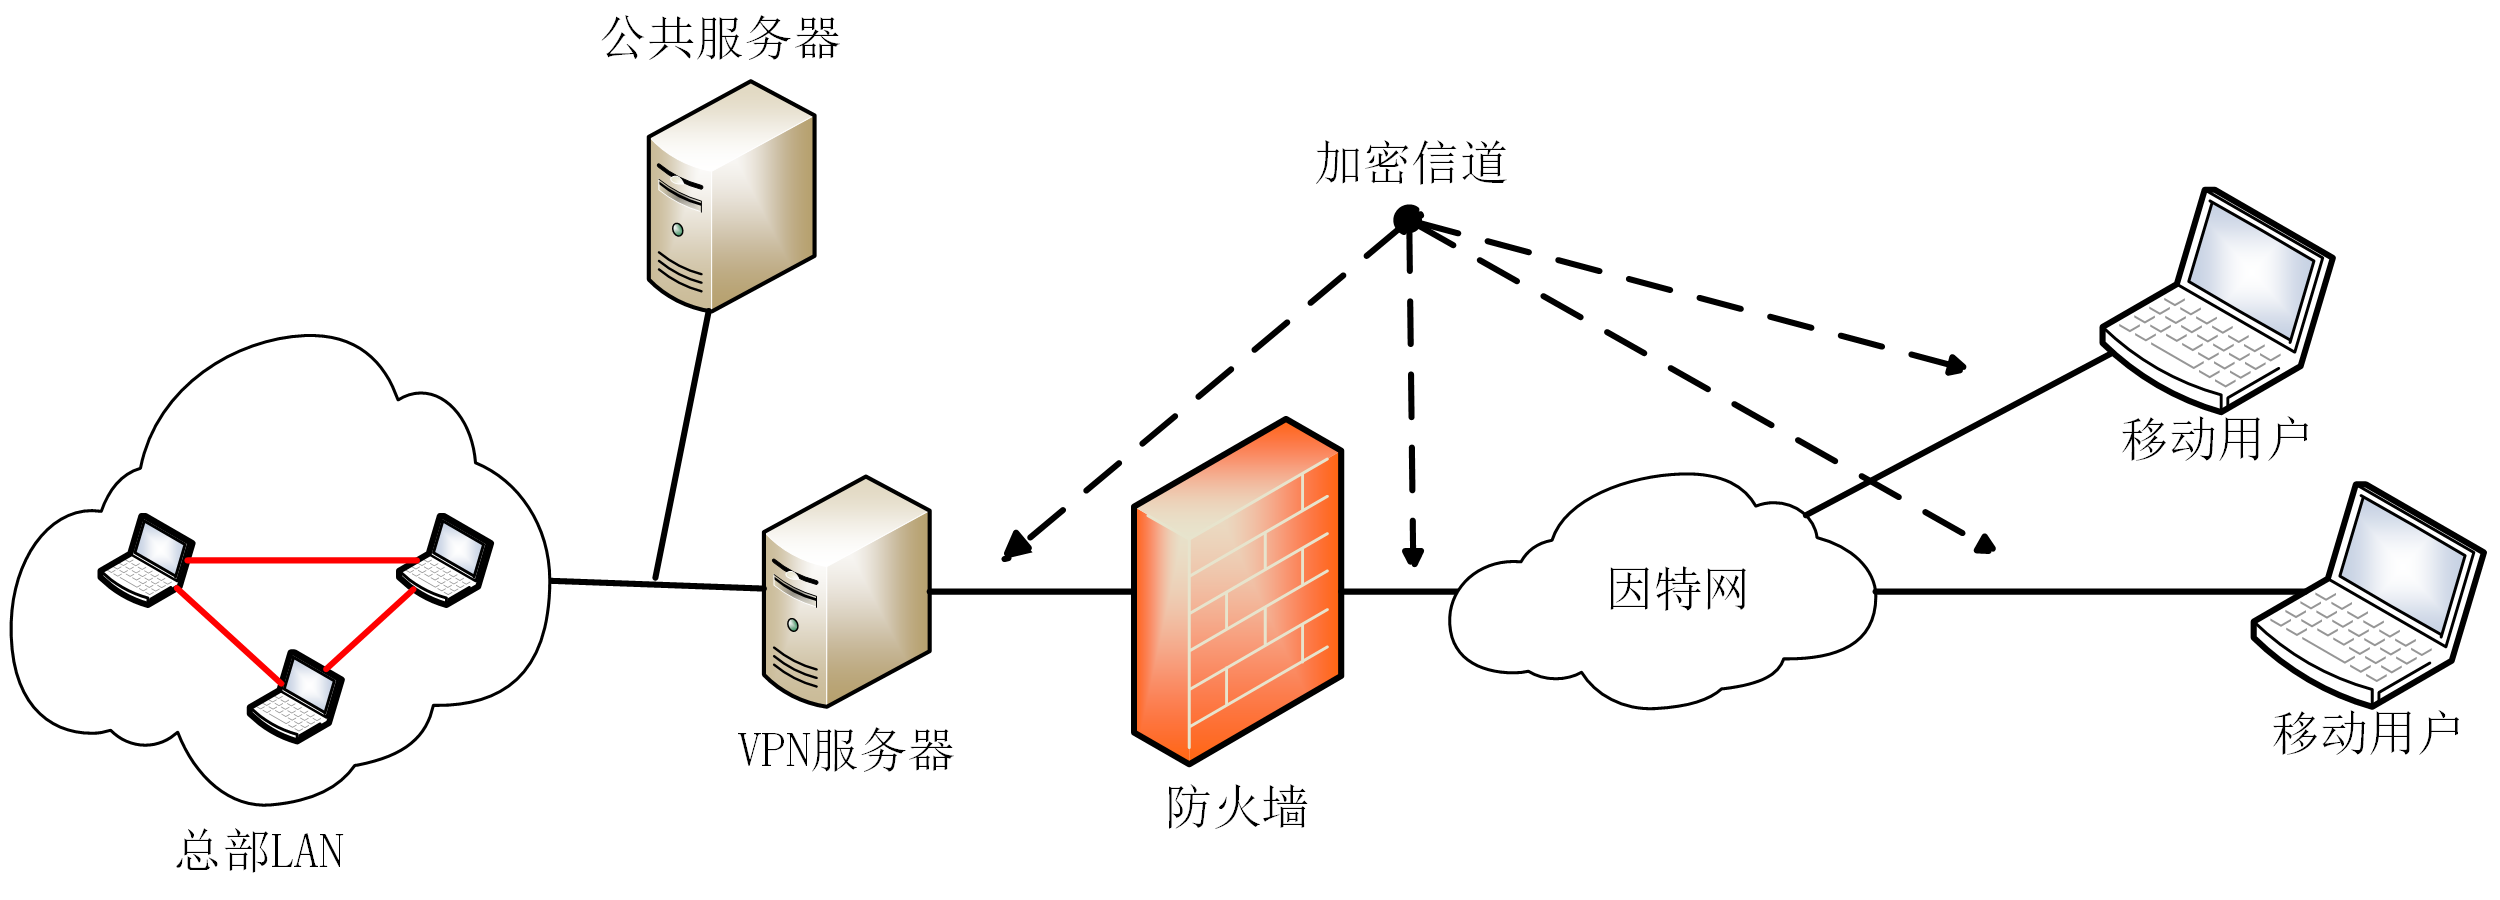 图 3-7 Access VPN